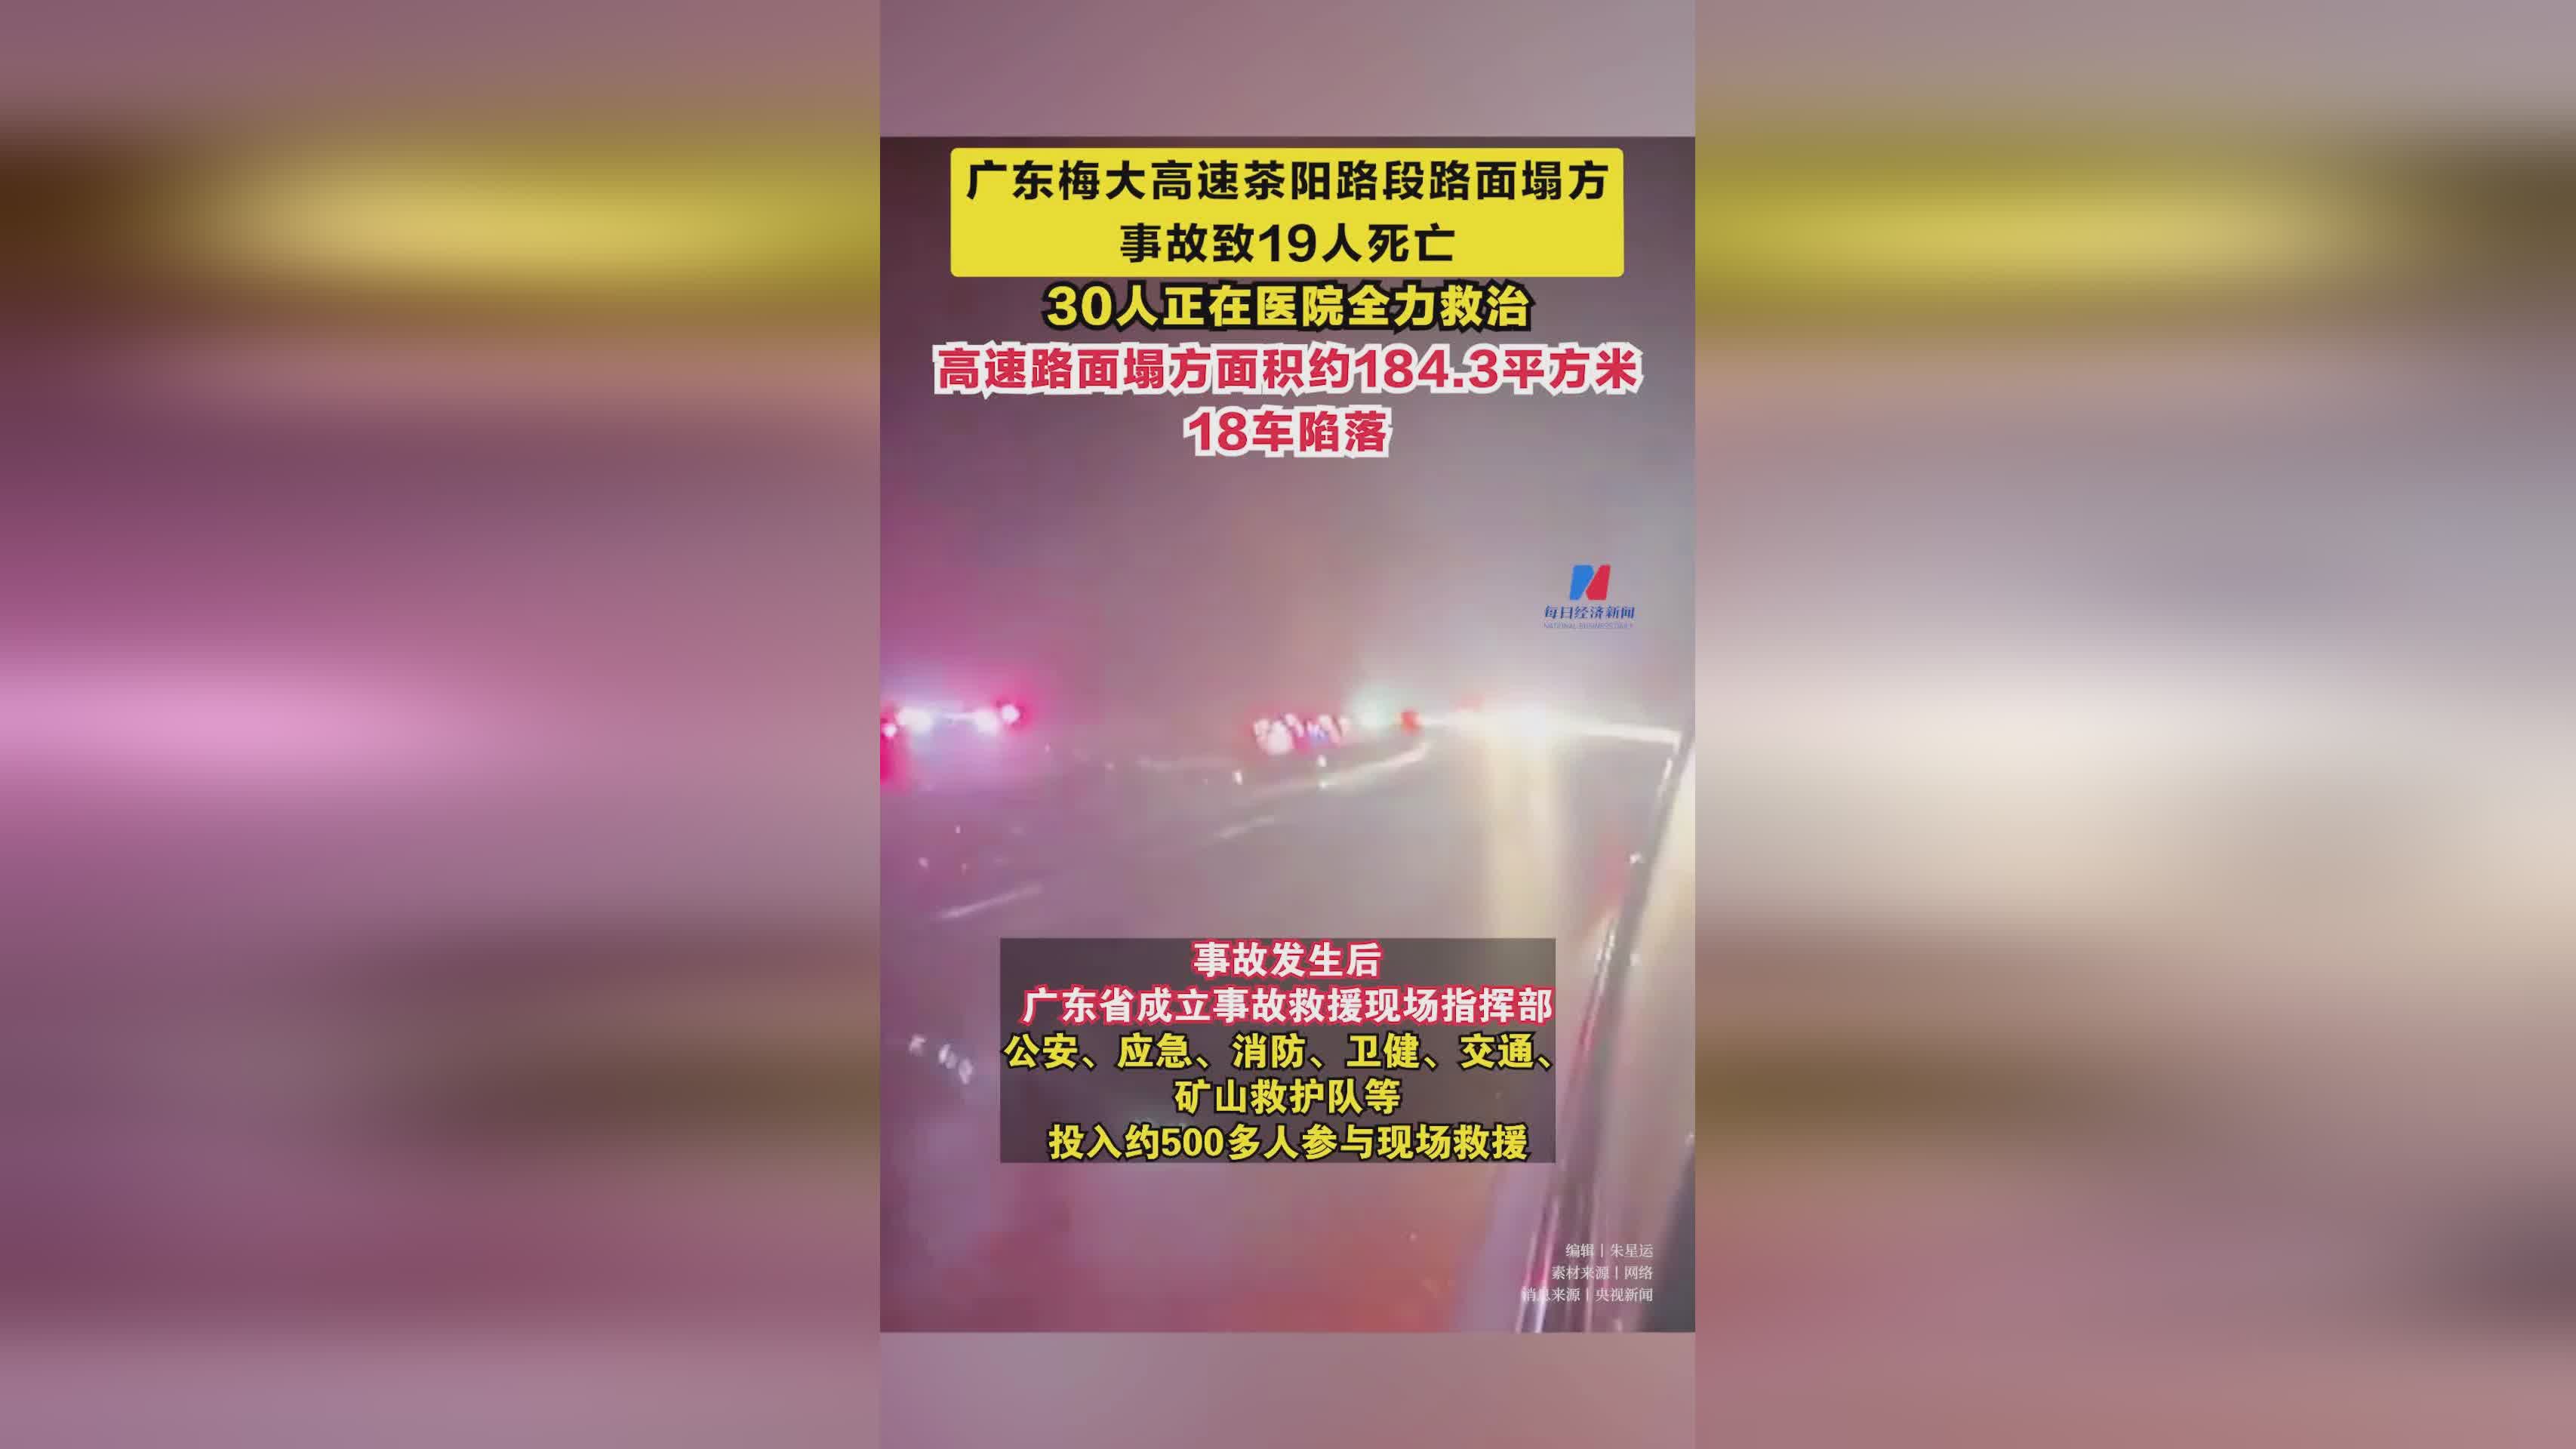 网友寻找疑因梅大高速事故失联的人,广东梅州发生严重交通事故致19人遇难